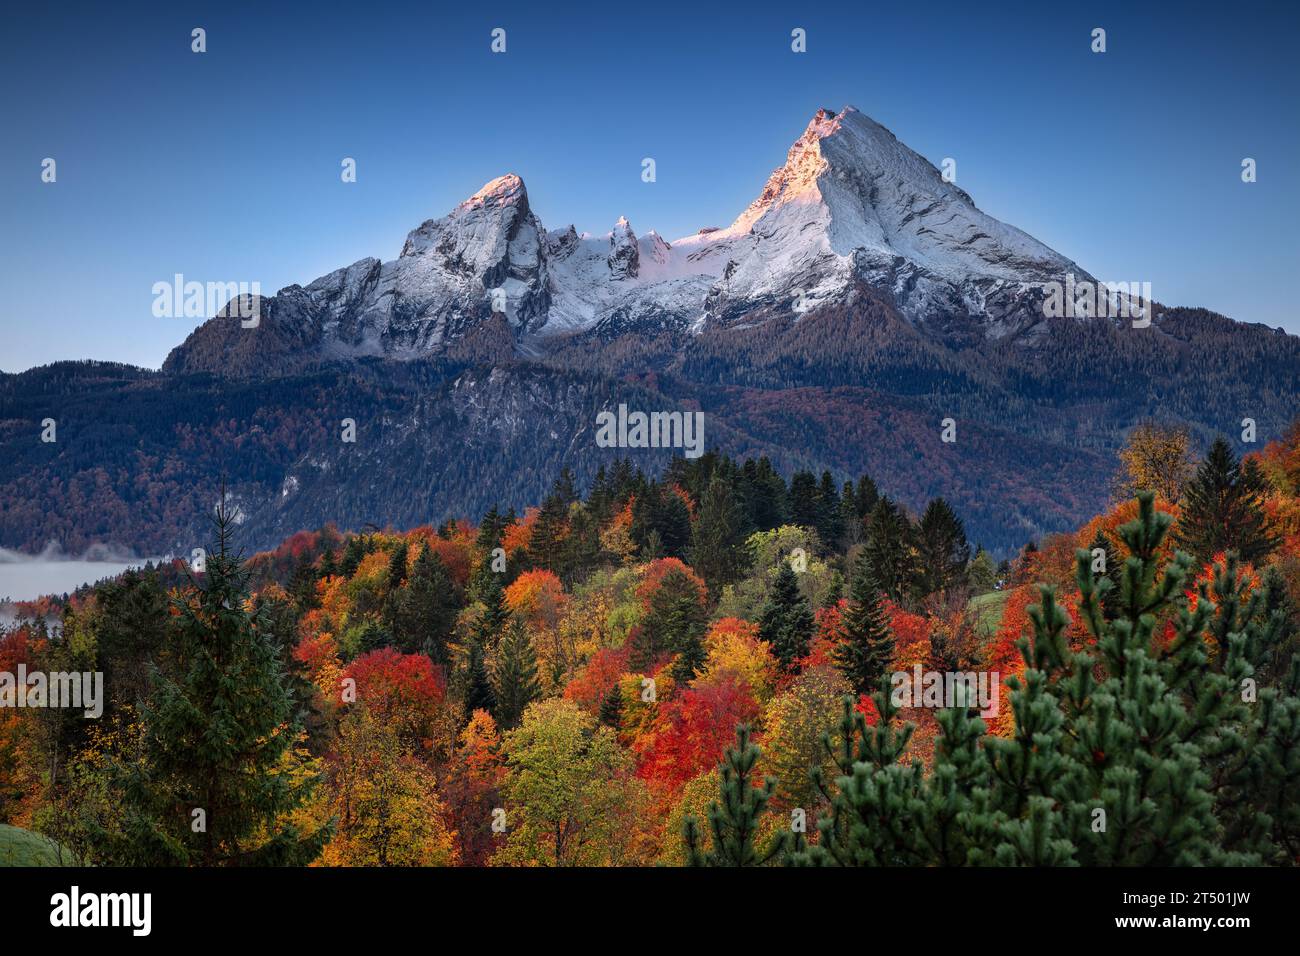 Watzmann Berg, Bayerische Alpen, Deutschland. Landschaftsbild der bayerischen Alpen mit dem Watzmann bei schönem Herbstsonnenaufgang. Stockfoto